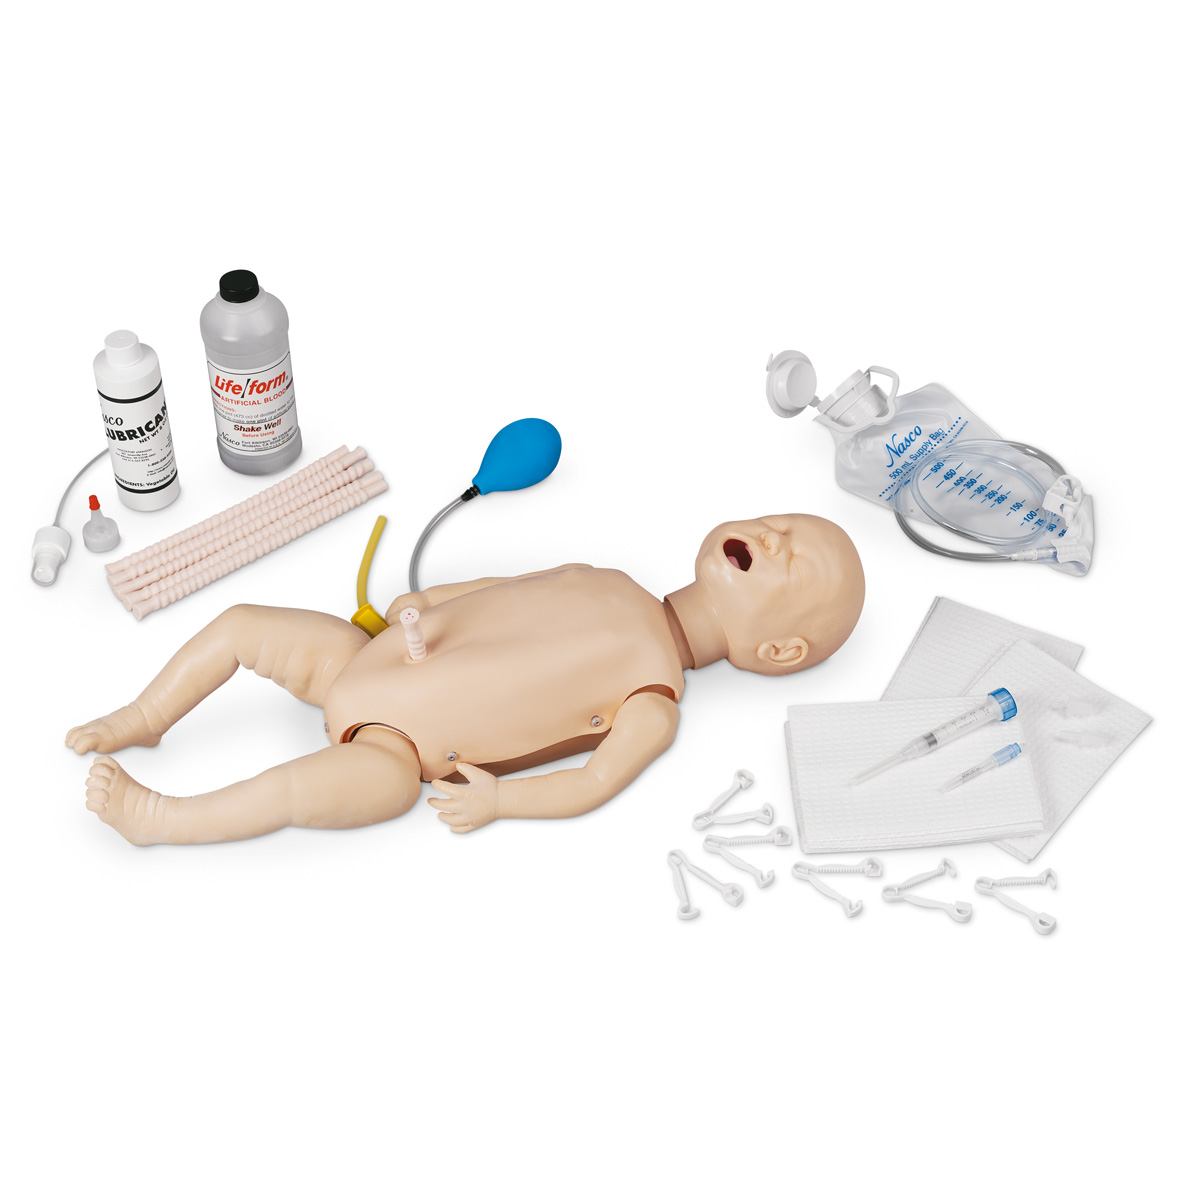 Тренажер для обучения неотложной помощи младенцу Life/form Infant, базовый